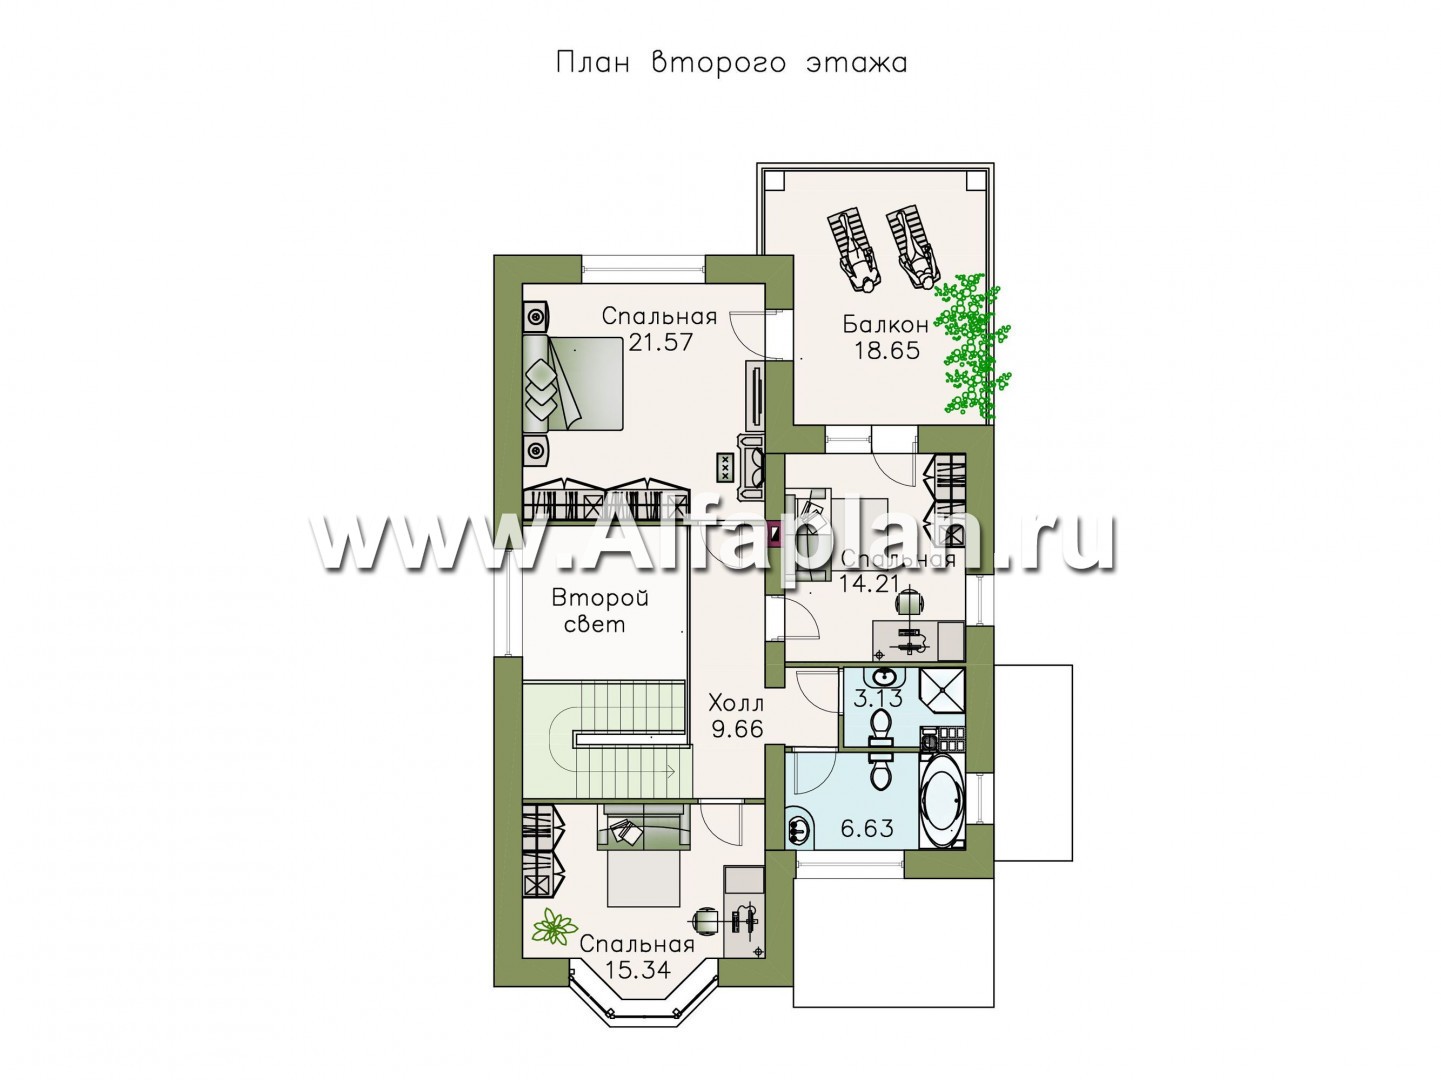 Проекты домов Альфаплан - Коттедж с цоколем и балконом-галереей на 2-ом этаже - план проекта №3